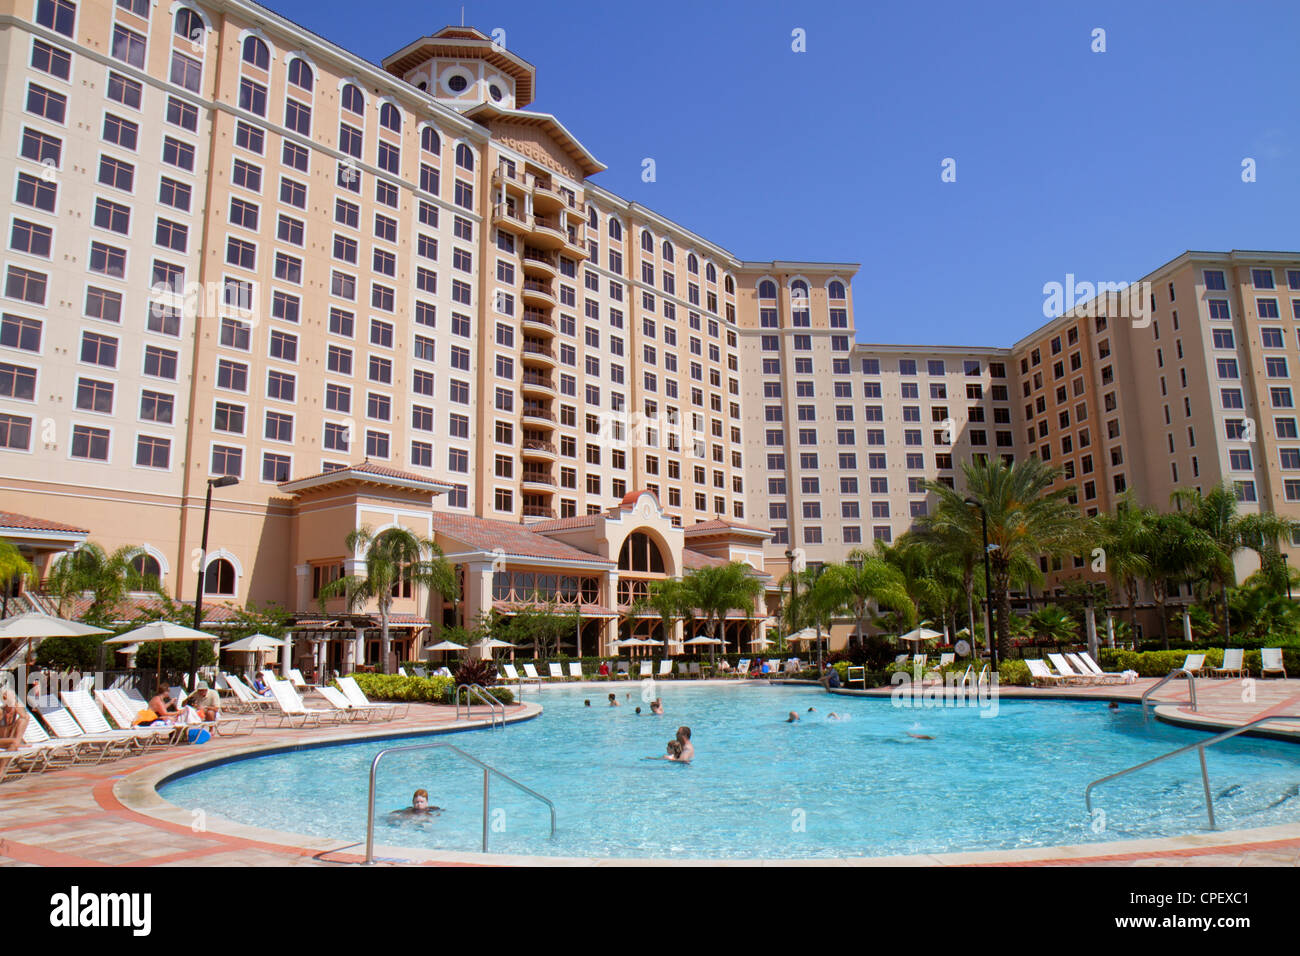 Orlando Florida, Rosen Shingle Creek Water, hôtel hôtels hôtels hôtels hôtels motels Inn motel, complexe, extérieur avant, entrée, propriété, piscine, clients Banque D'Images